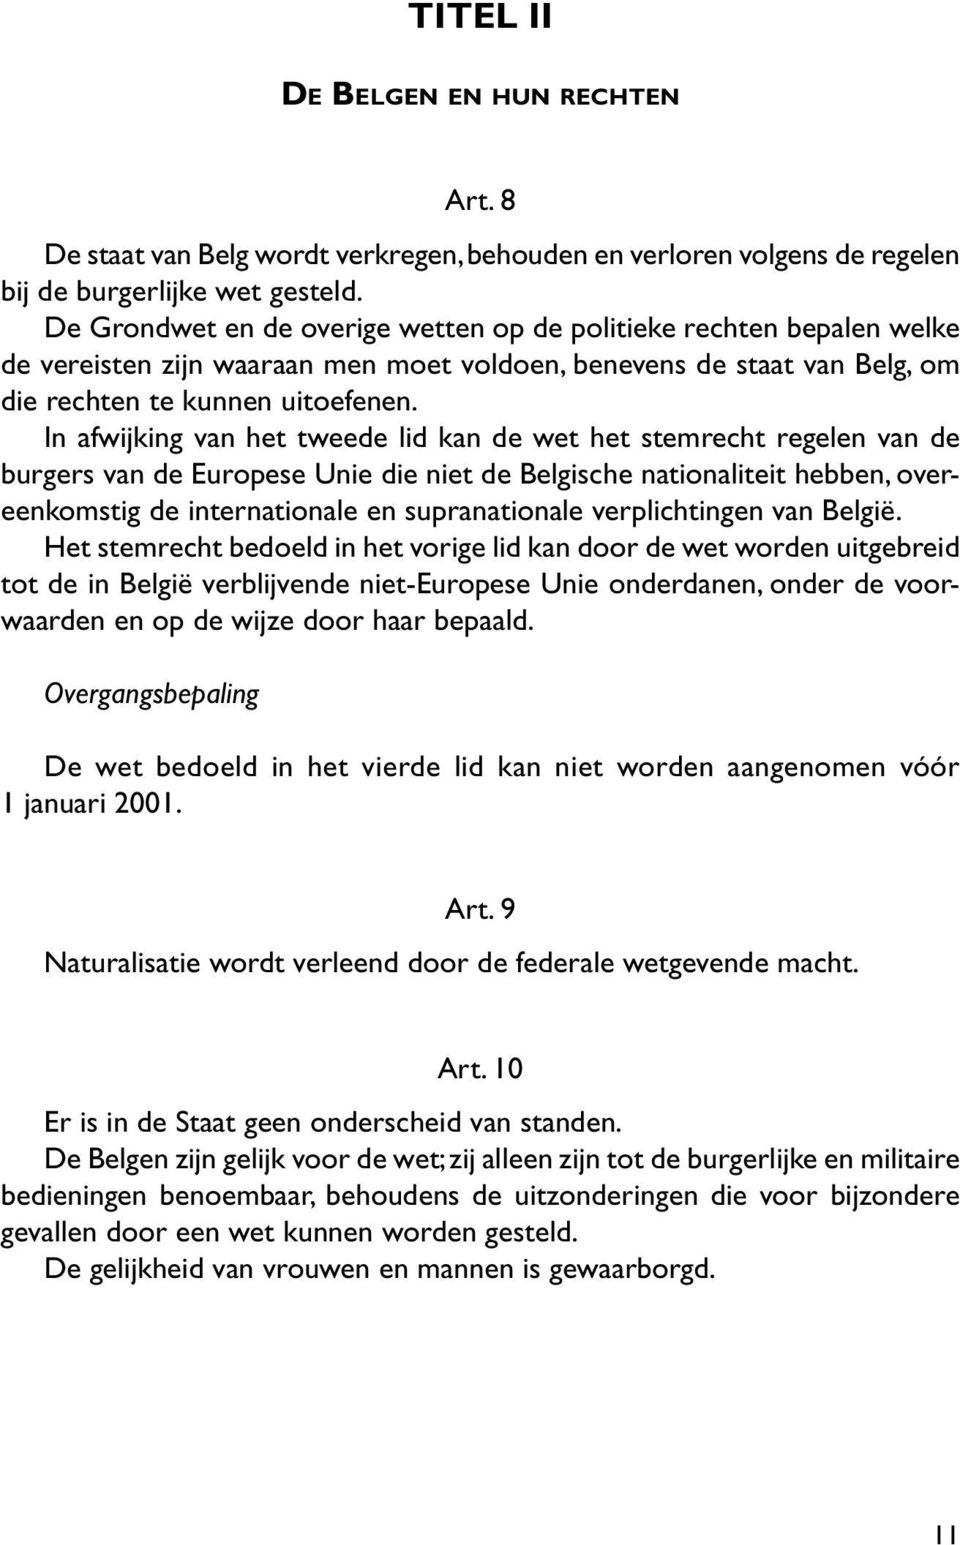 In afwijking van het tweede lid kan de wet het stemrecht regelen van de burgers van de Europese Unie die niet de Belgische nationaliteit hebben, overeenkomstig de internationale en supranationale